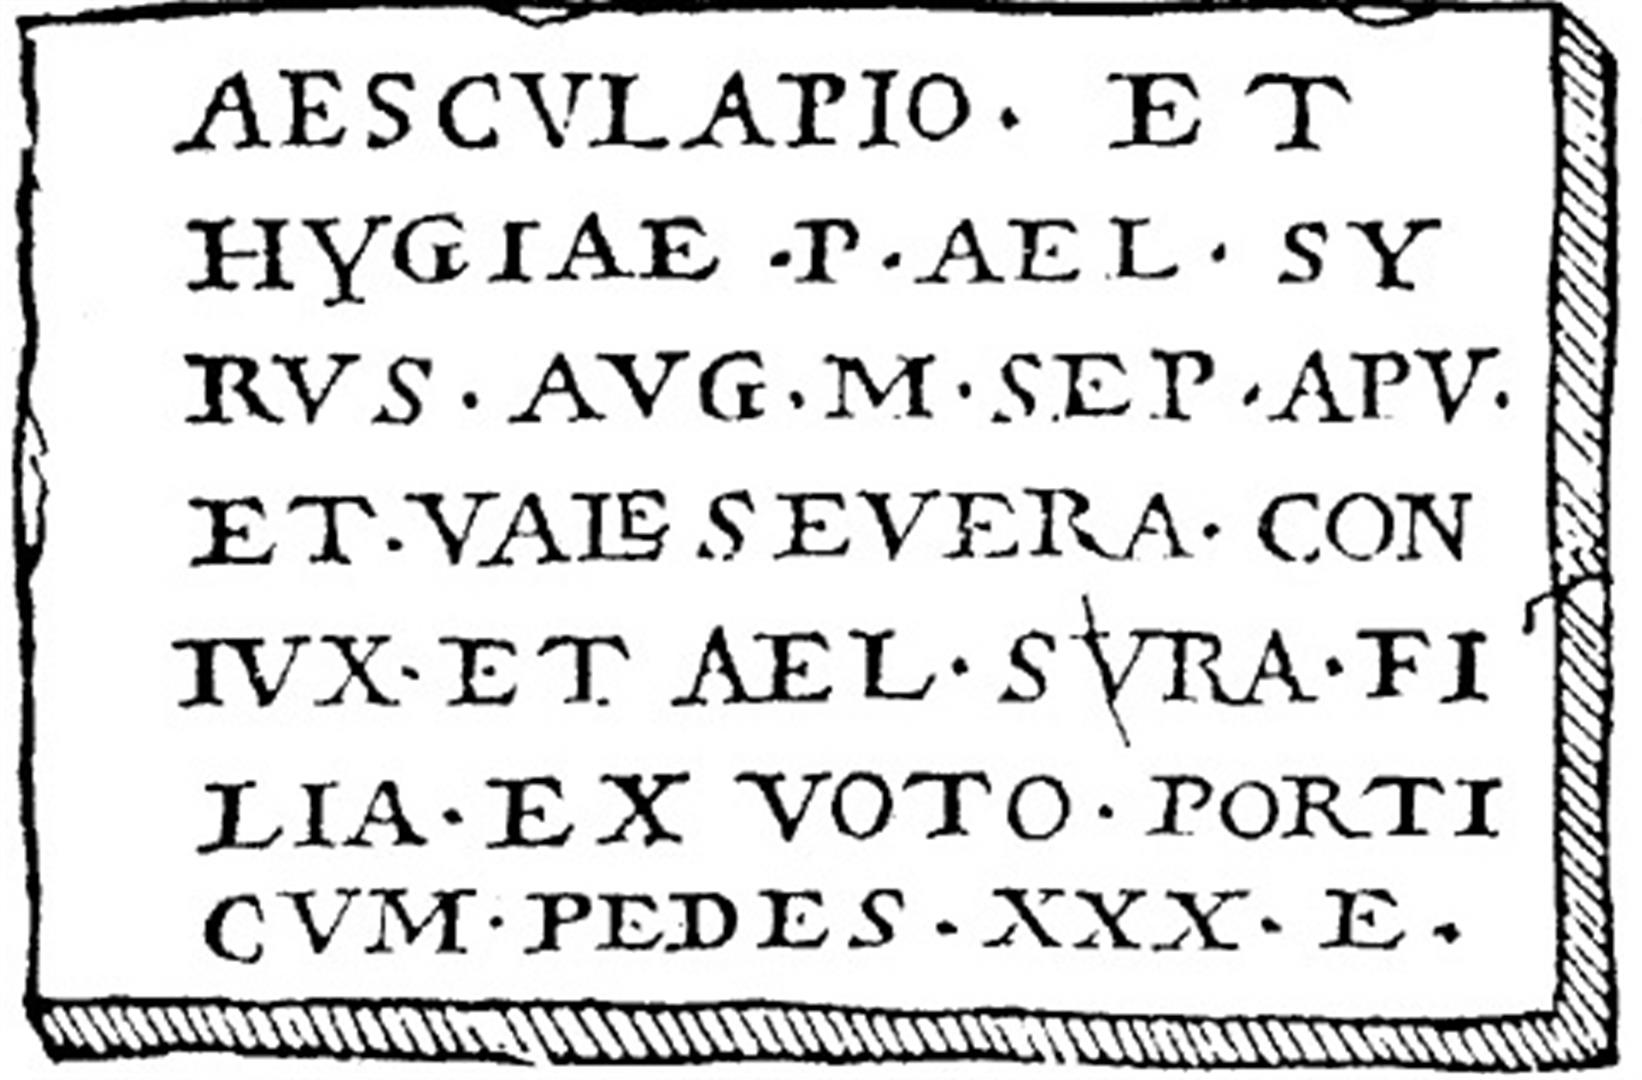 Inscripţie votivă dedicată lui Aesculap şi Hygiei văzută şi copiată de către Johannes Mezerzius la Apulum la începutul secolului al XVI-lea. Astăzi dispărută (după I. Piso).